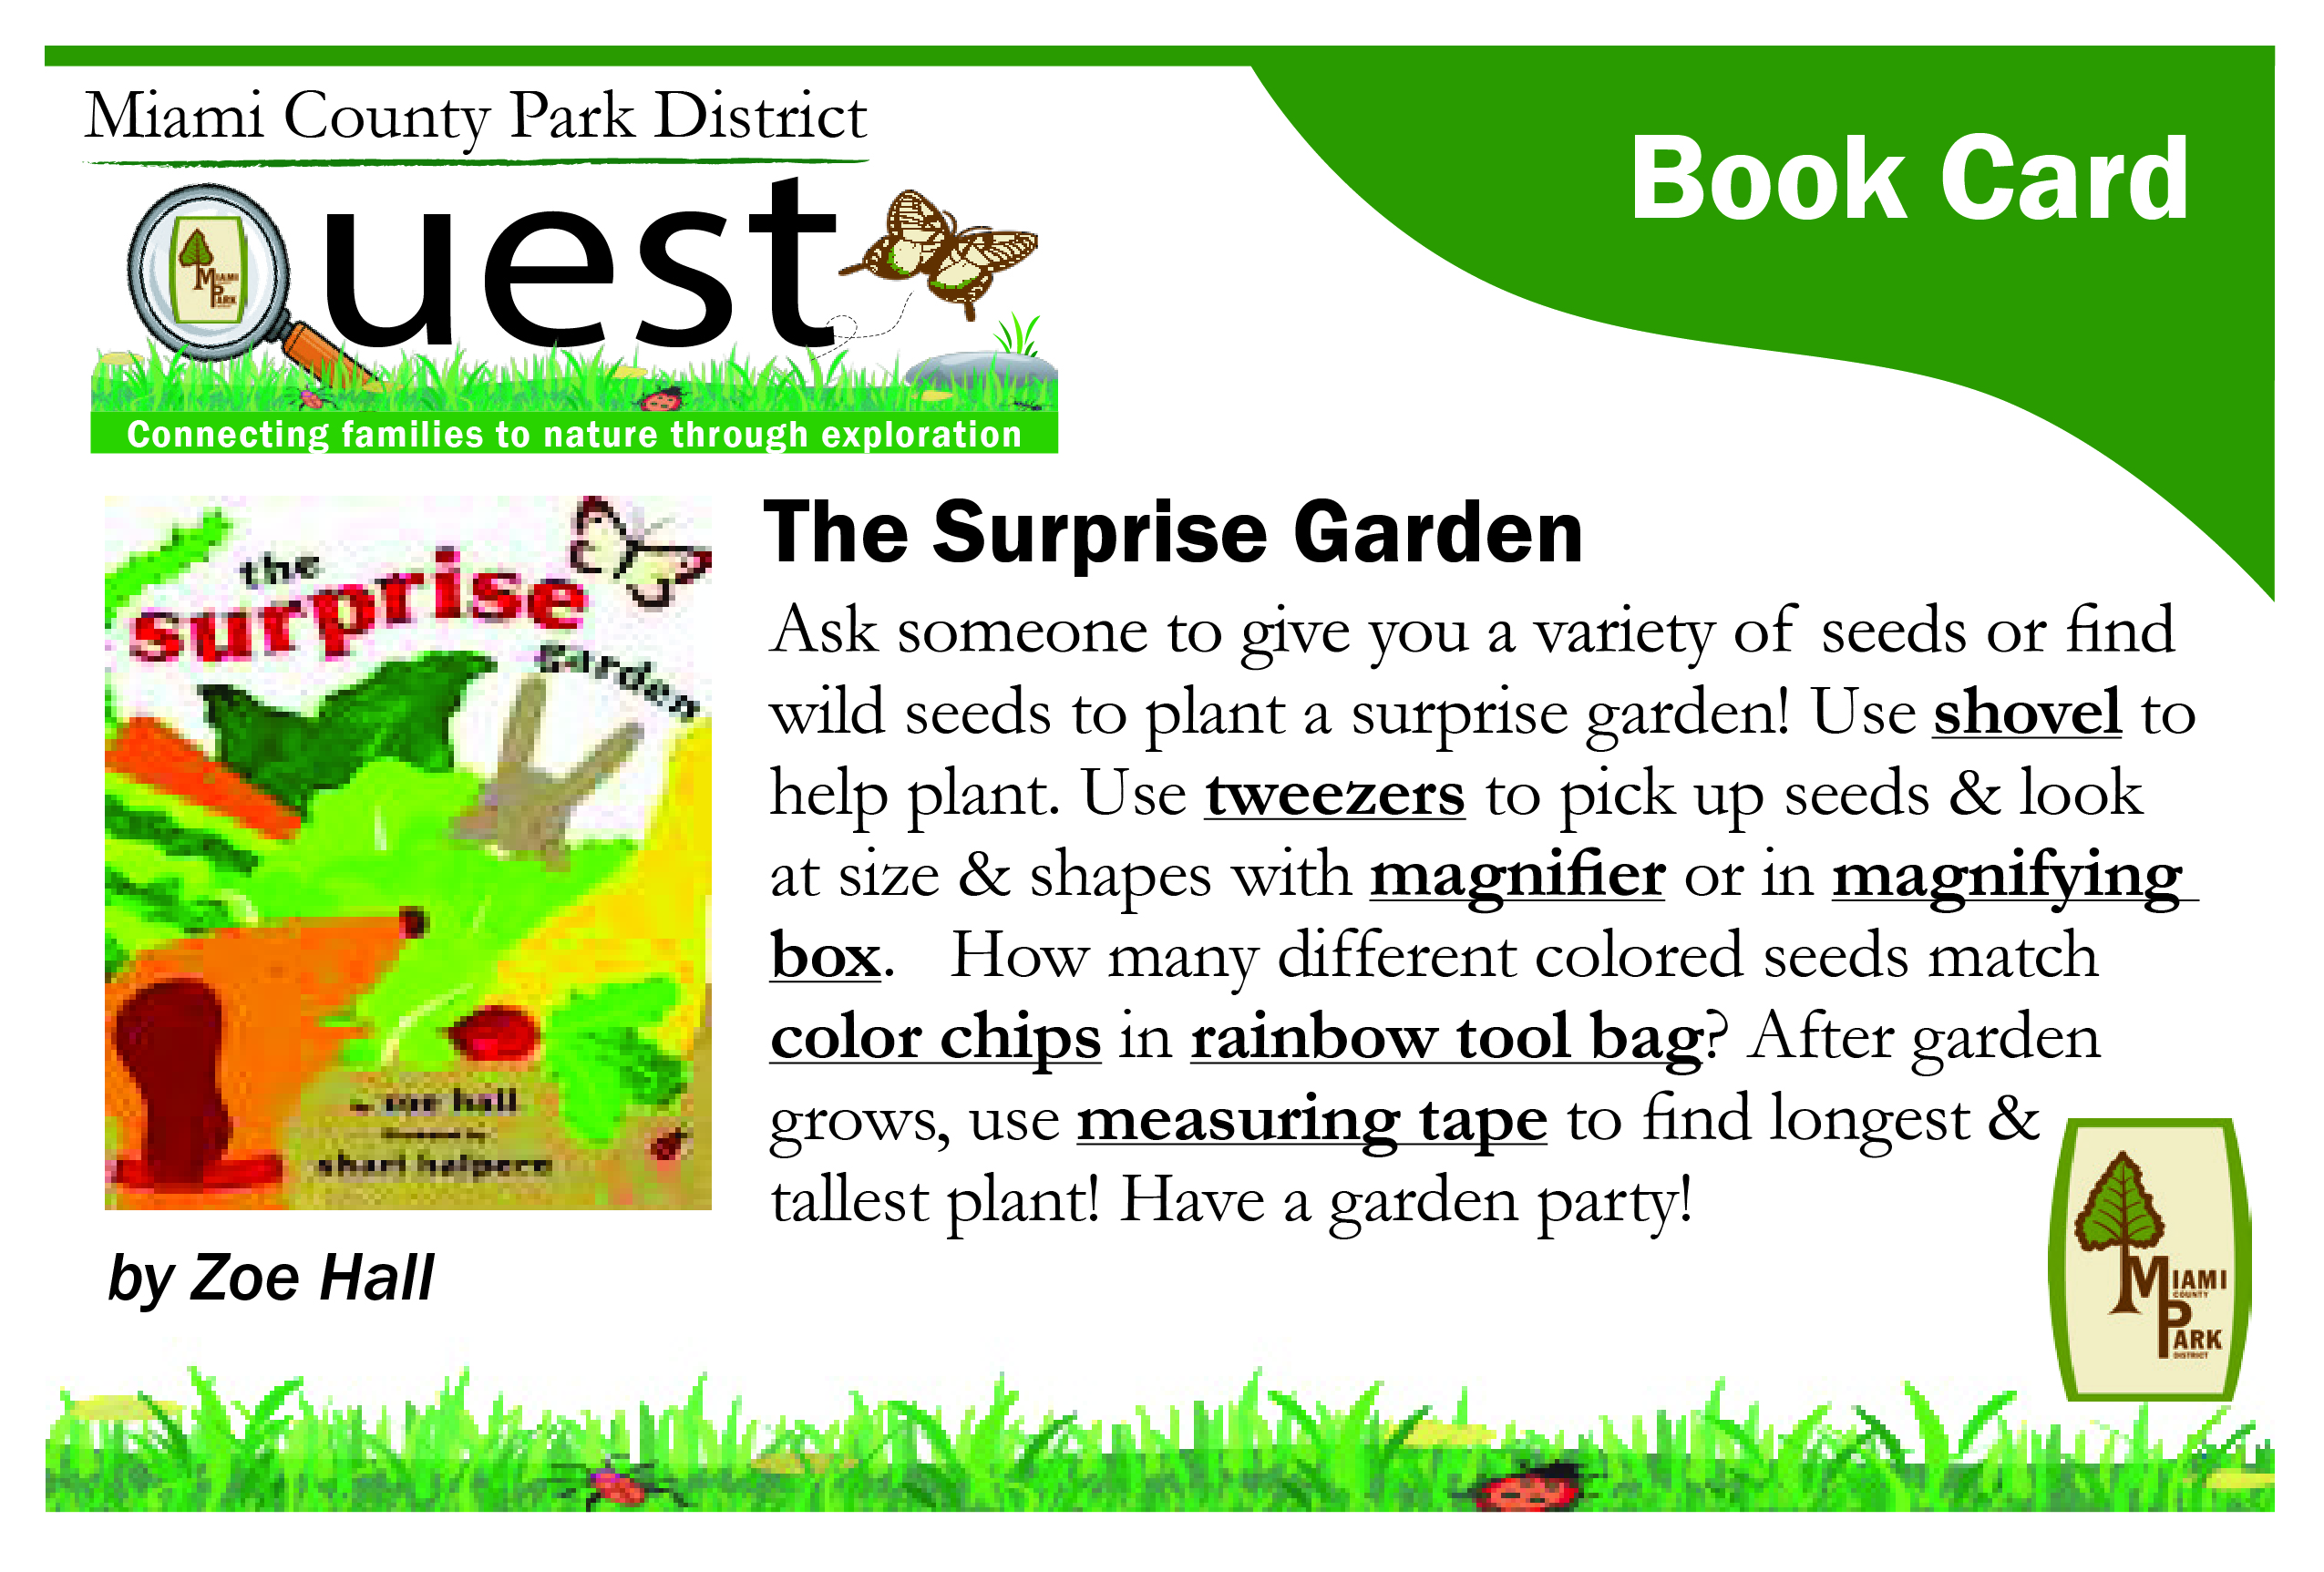 The Surprise Garden Book Card